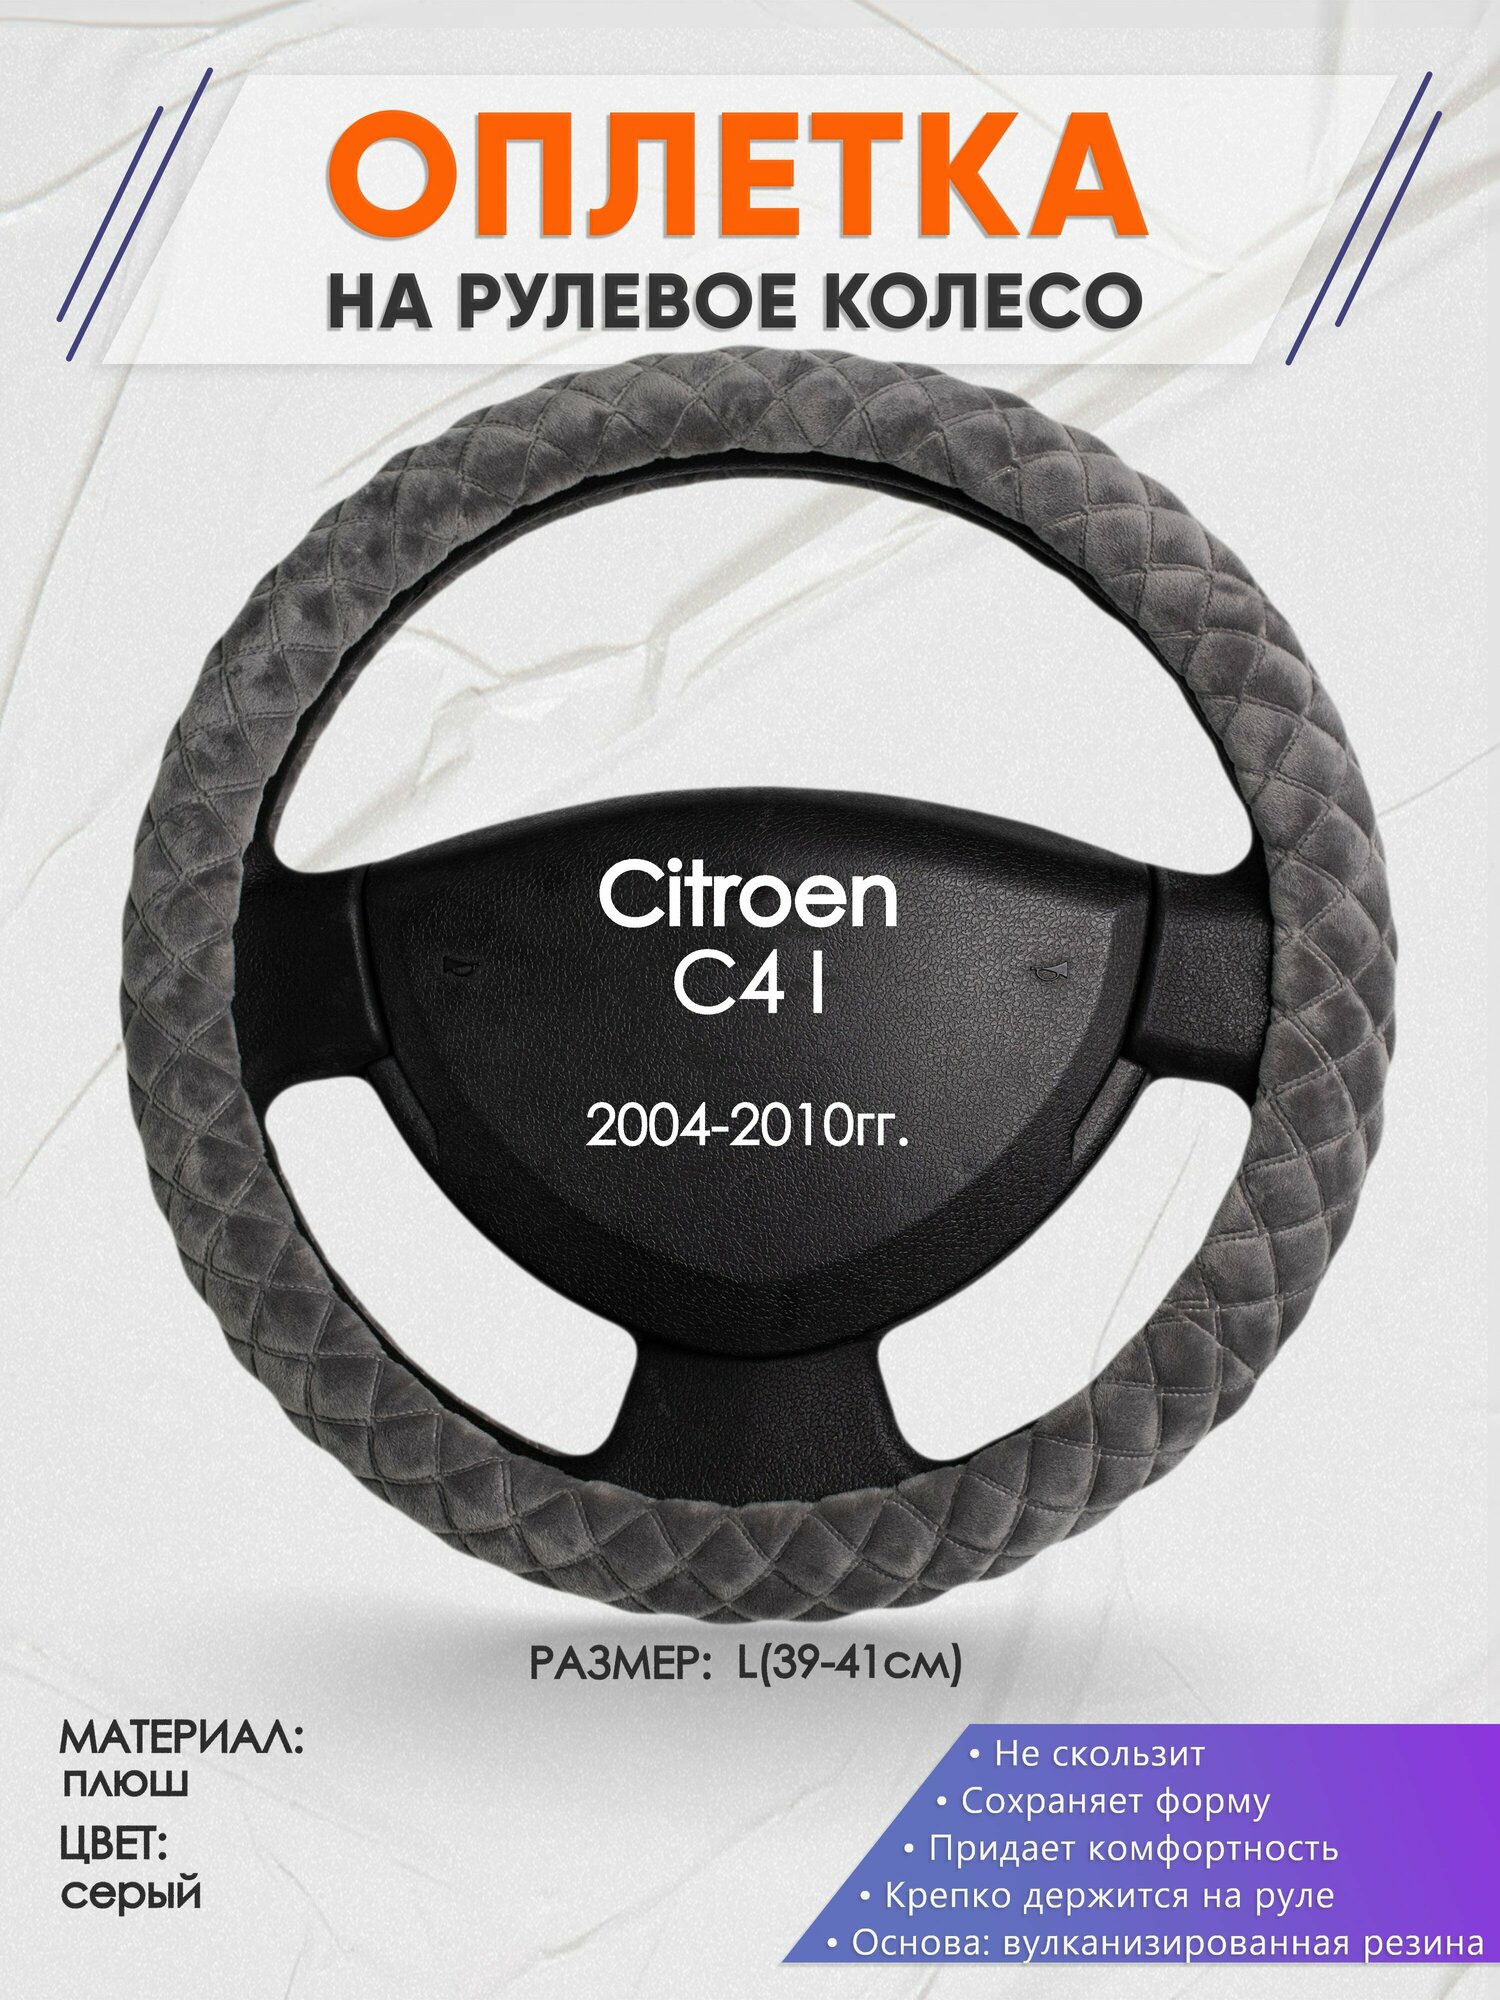 Оплетка на руль для Citroen C4 I(Ситроен С4 1 поколение) 2004-2010, L(39-41см), Замша 35